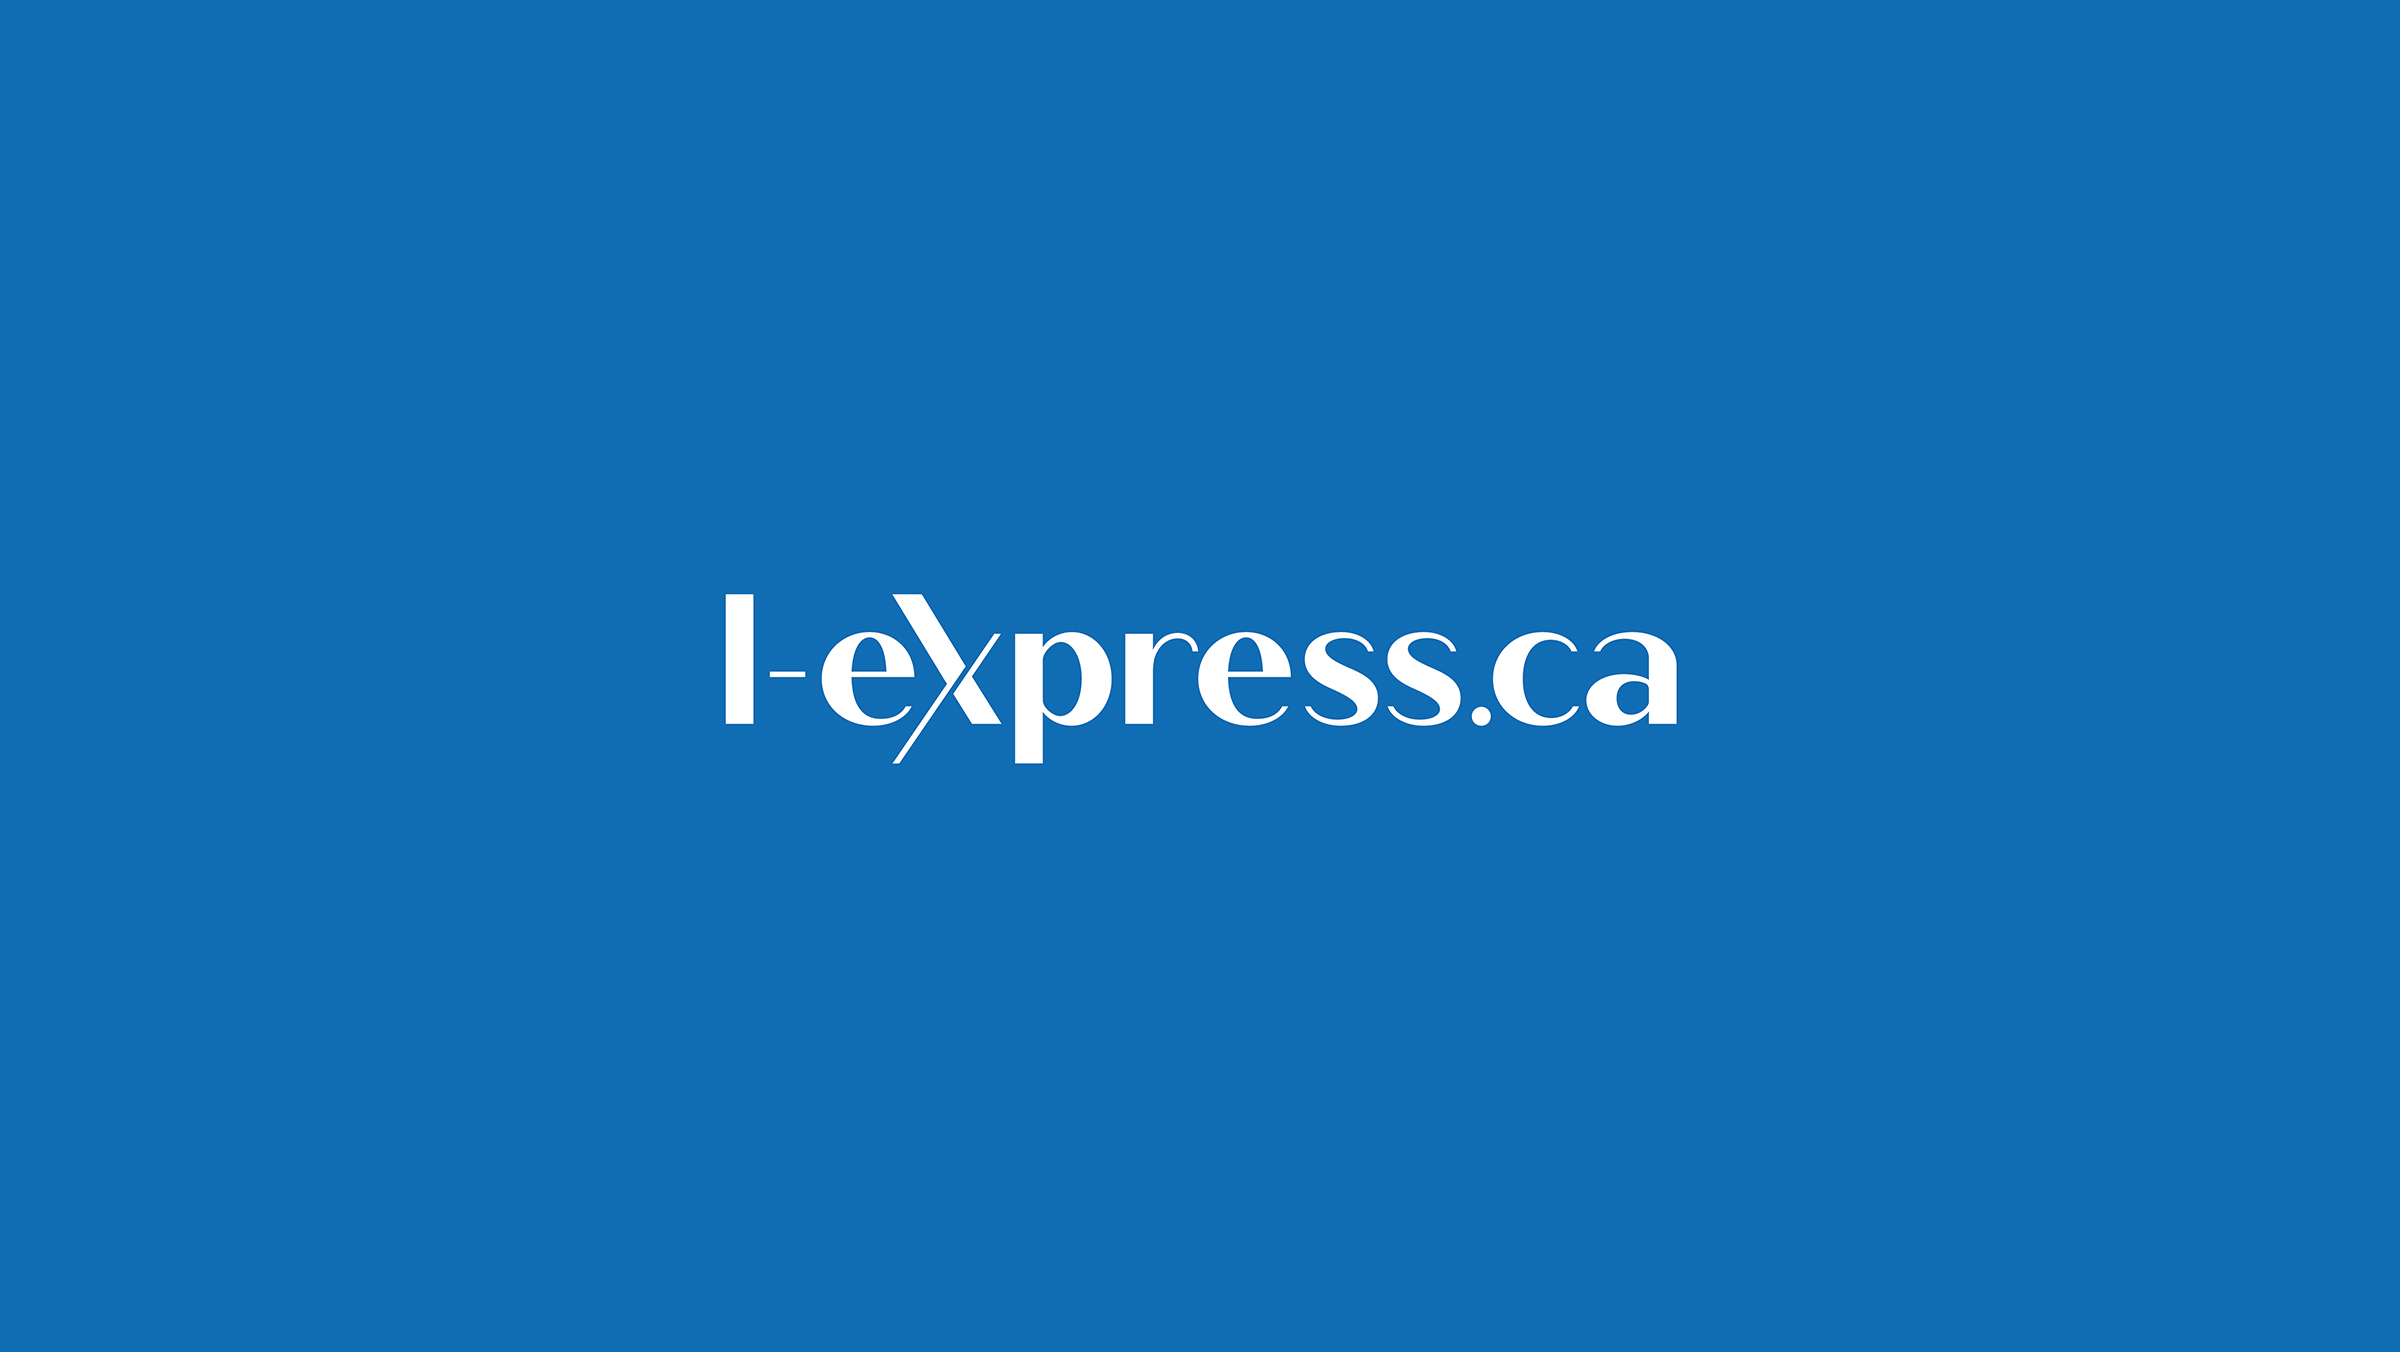 L-express.ca